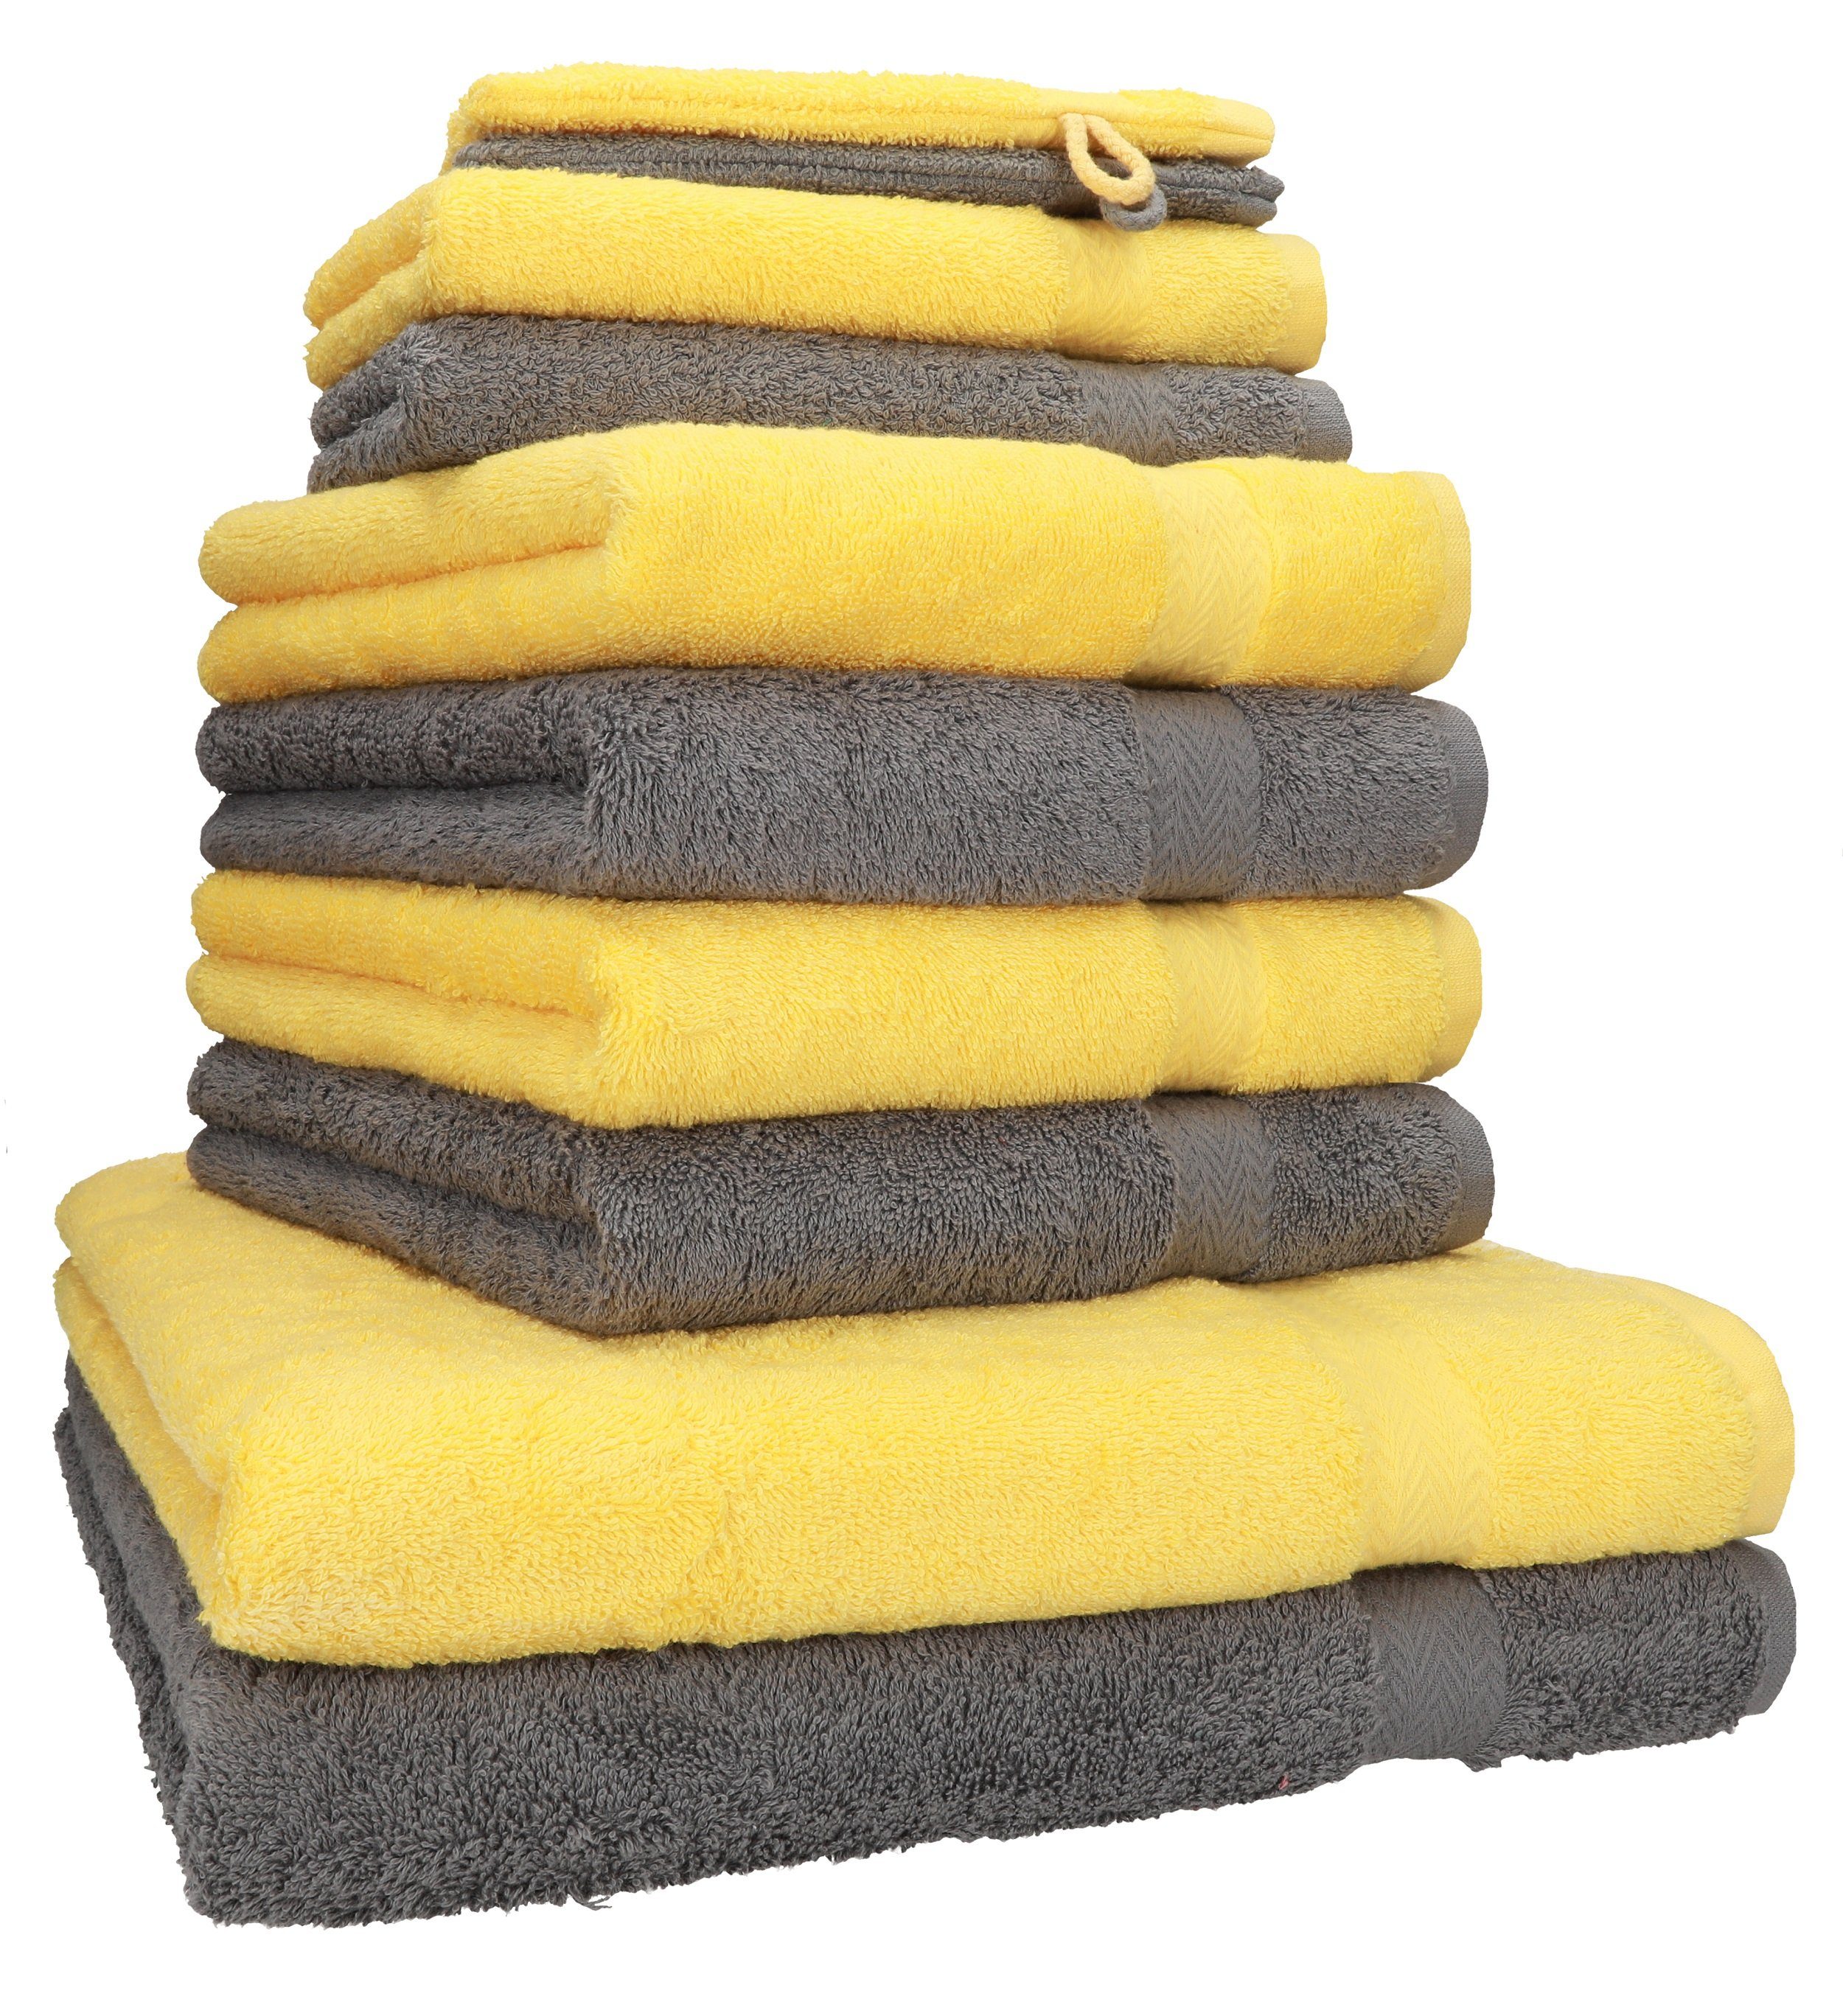 Betz Handtuch Set 10-TLG. Handtuch-Set Premium Farbe Anthrazit & Gelb, 100% Baumwolle, (10-tlg)